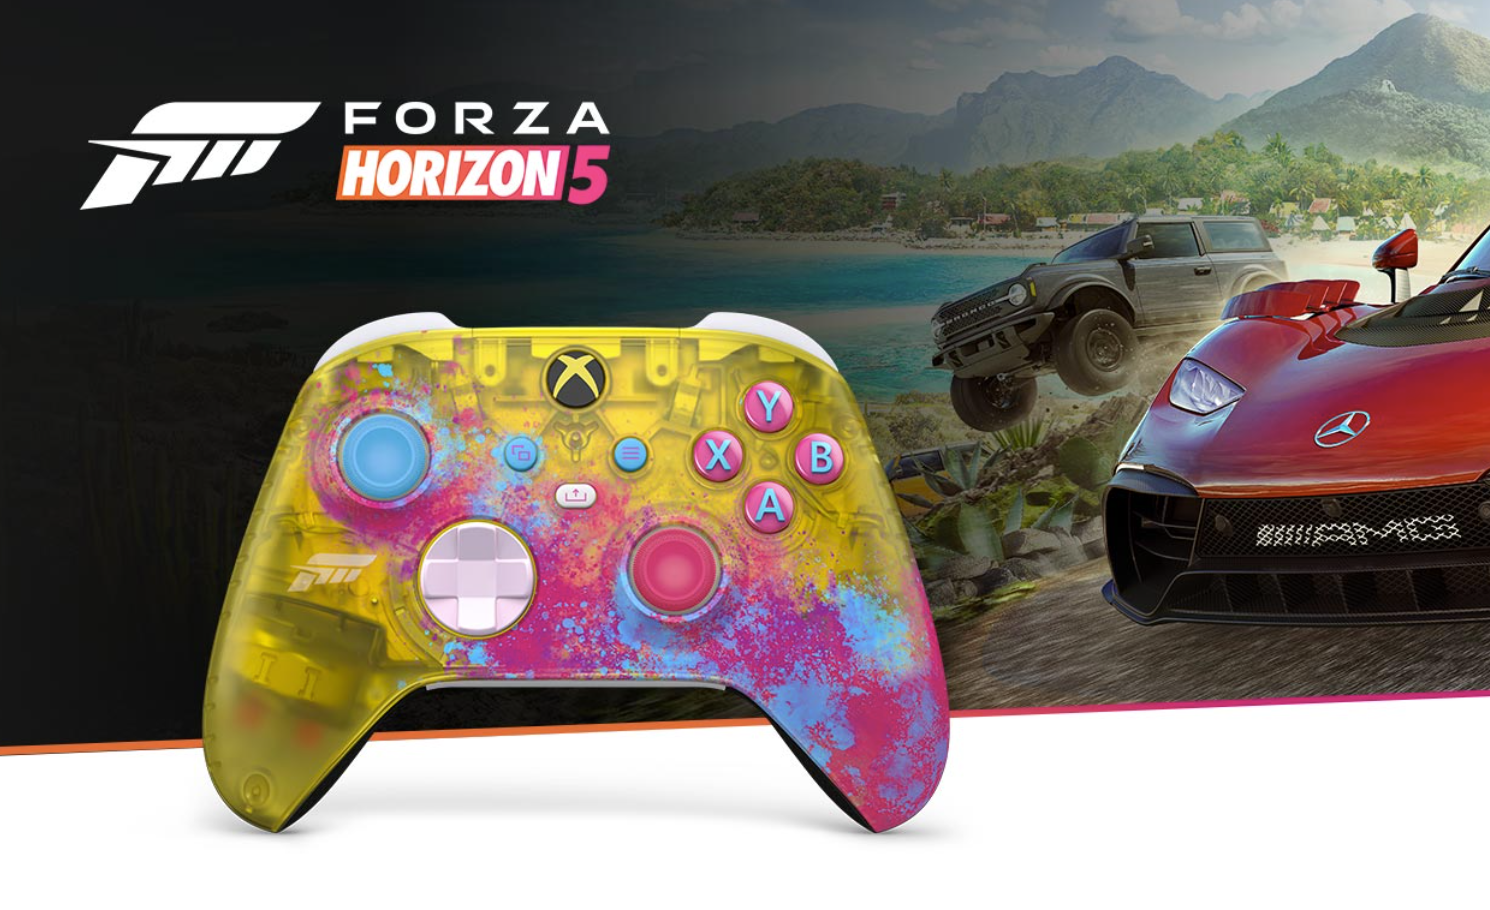 Volantes compatibles en Forza Horizon 5 